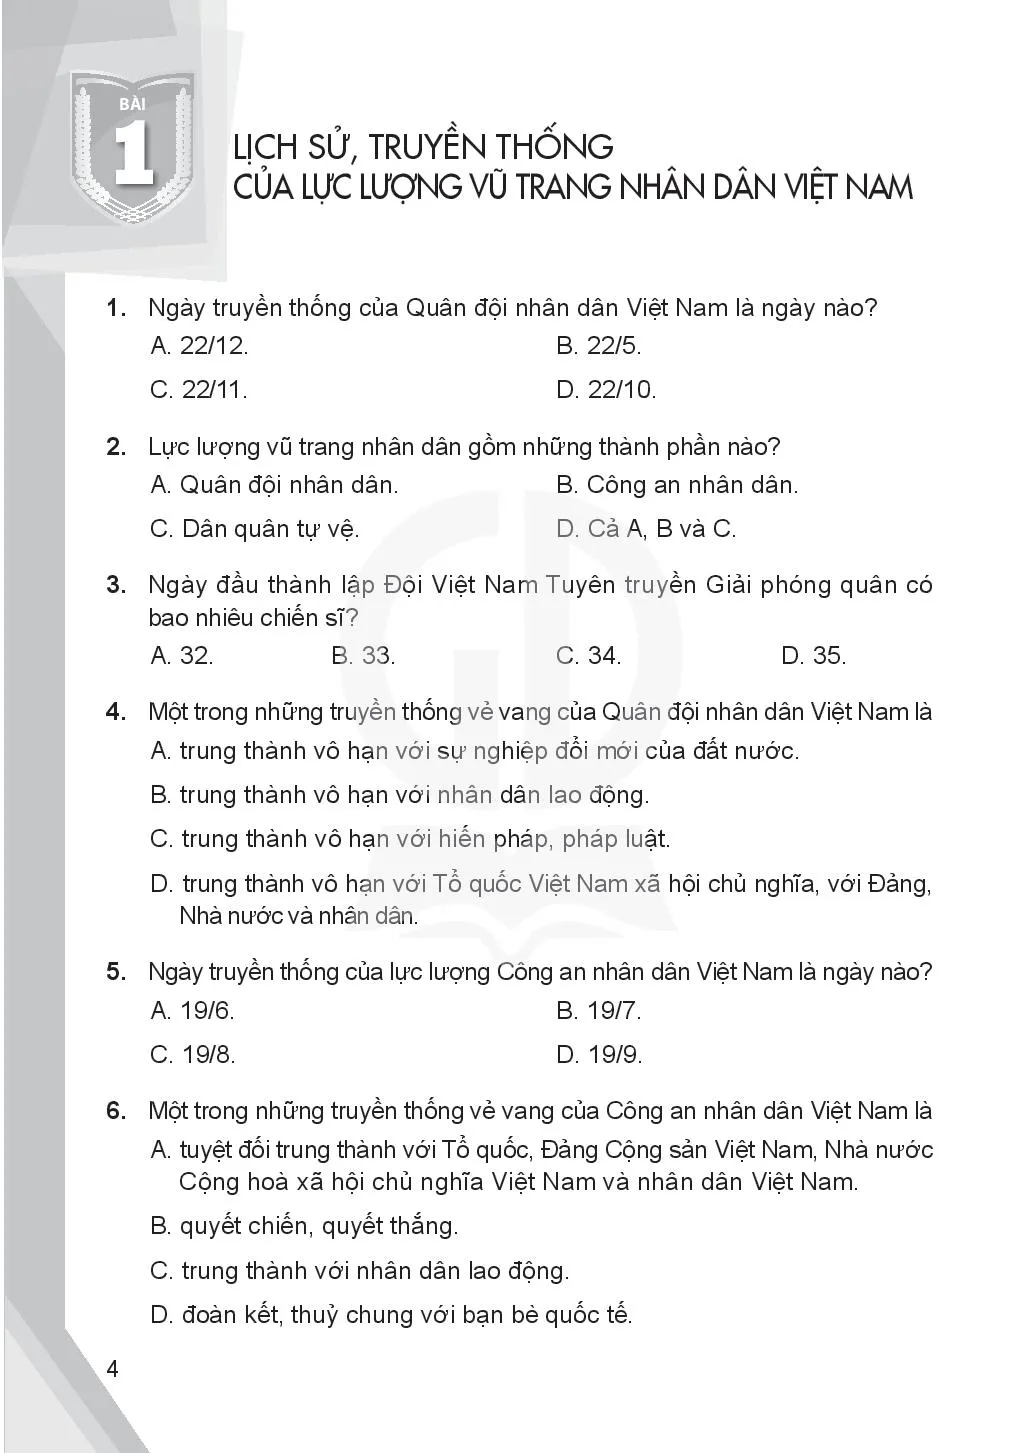 Bài 1. Lịch sử, truyền thống của lực lượng vũ trang nhân dân Việt Nam